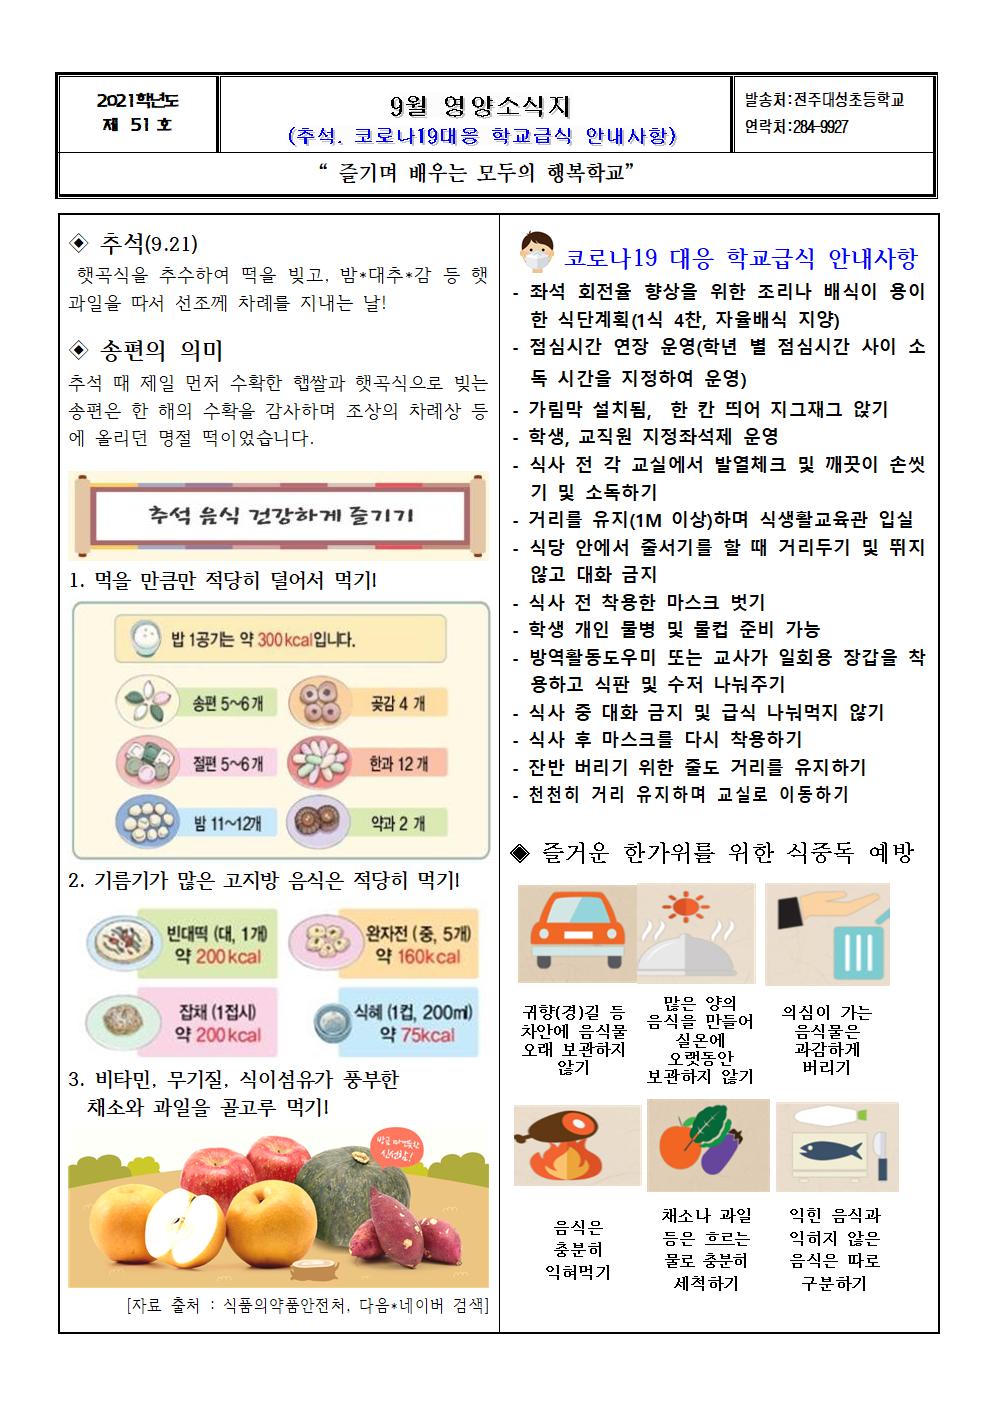 제51호 - 2021. 9월 영양소식(식단안내)지-추석, 코로나19대응 학교급식운영001